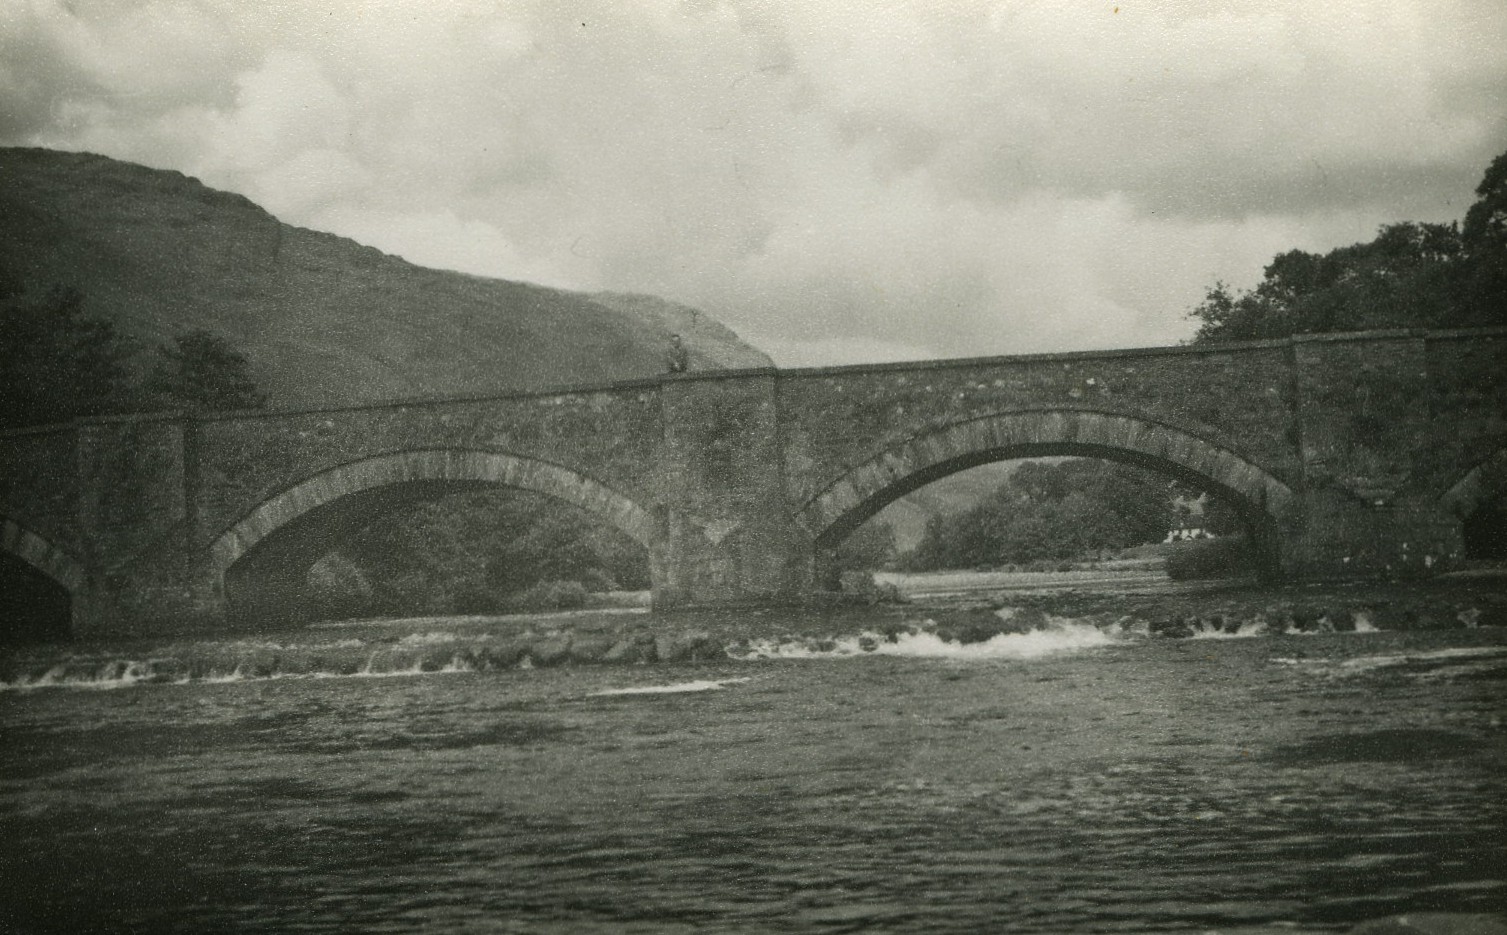 Fyne Bridge